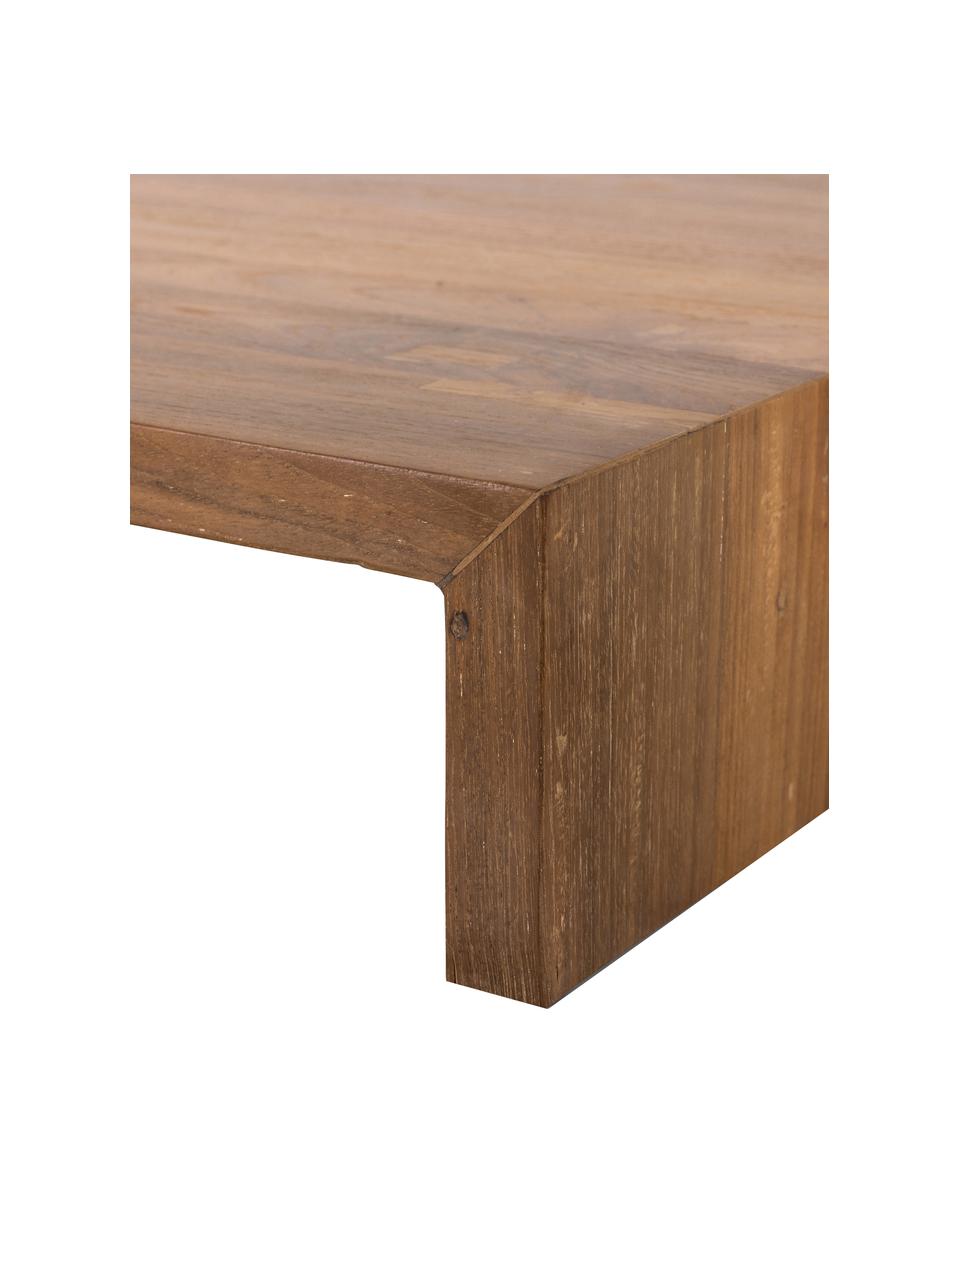 Konferenční stolek ze dřeva sungkai Plateau, Dřevo sungkai

Vzhledem k tomu, že se jedná o přírodní materiály, může se výrobek lišit od vyobrazení. Každý výrobek je jedinečný!, Dřevo sungkai, Š 62 cm, H 53 cm